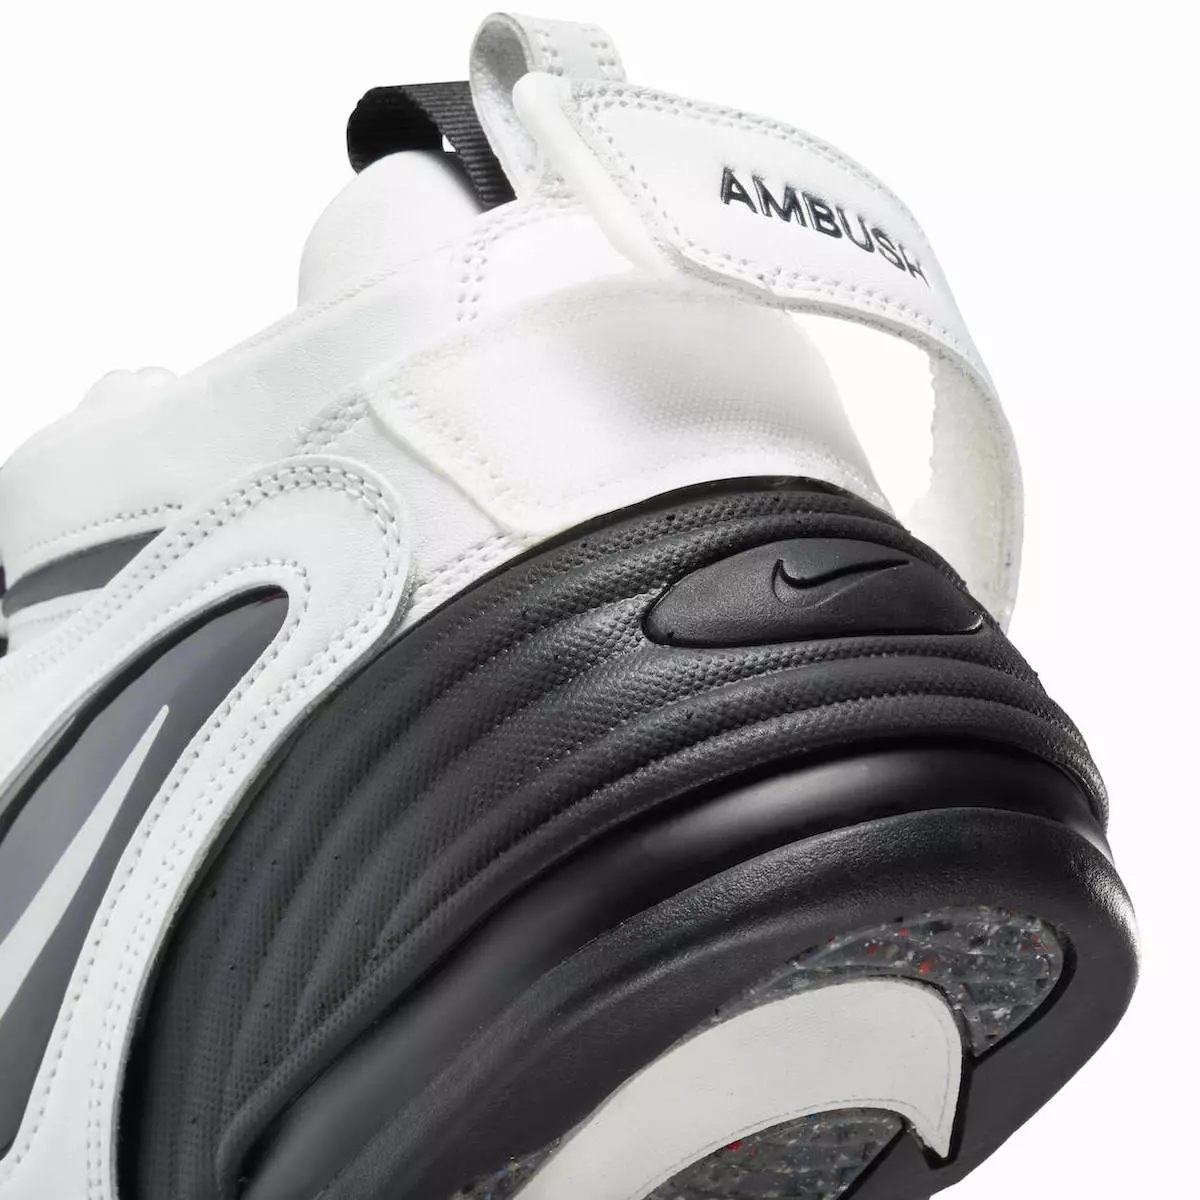 AMBUSH Nike Air Adjust Force Blancas DM8465-100 Fecha de lanzamiento